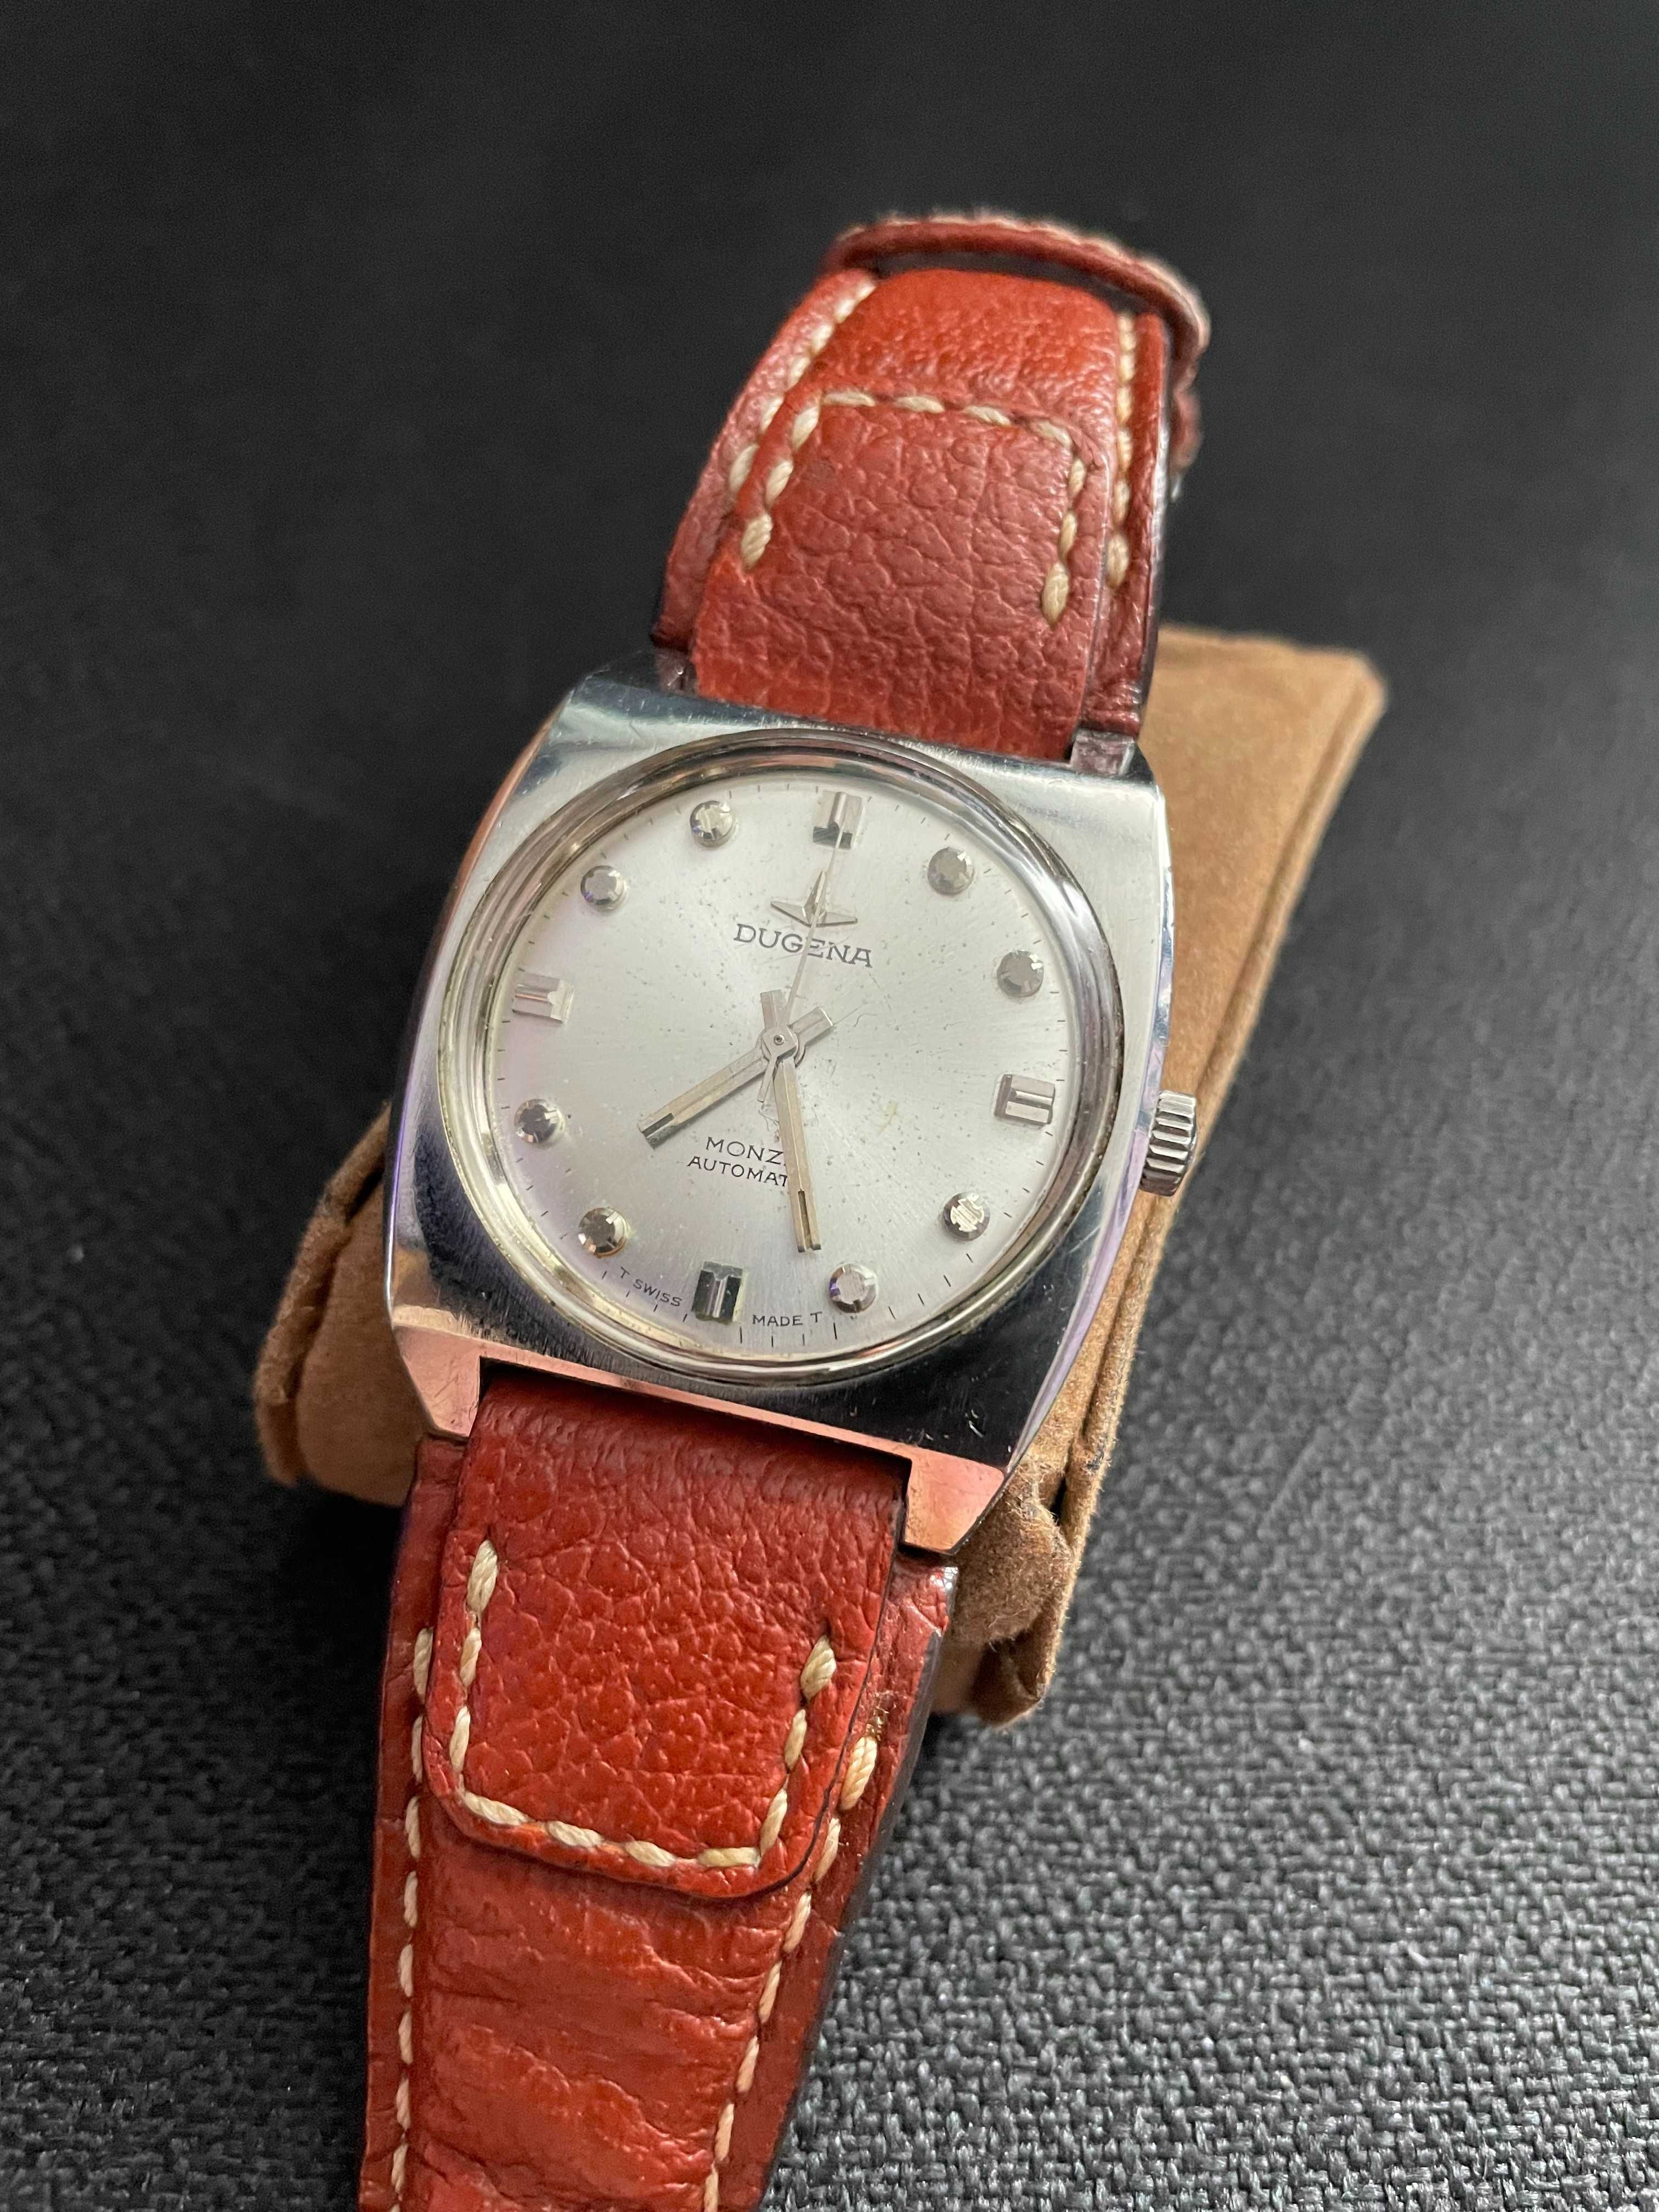 Zegarek DAUGENA Monza Automatic - 1960r. (Przybliżona data)